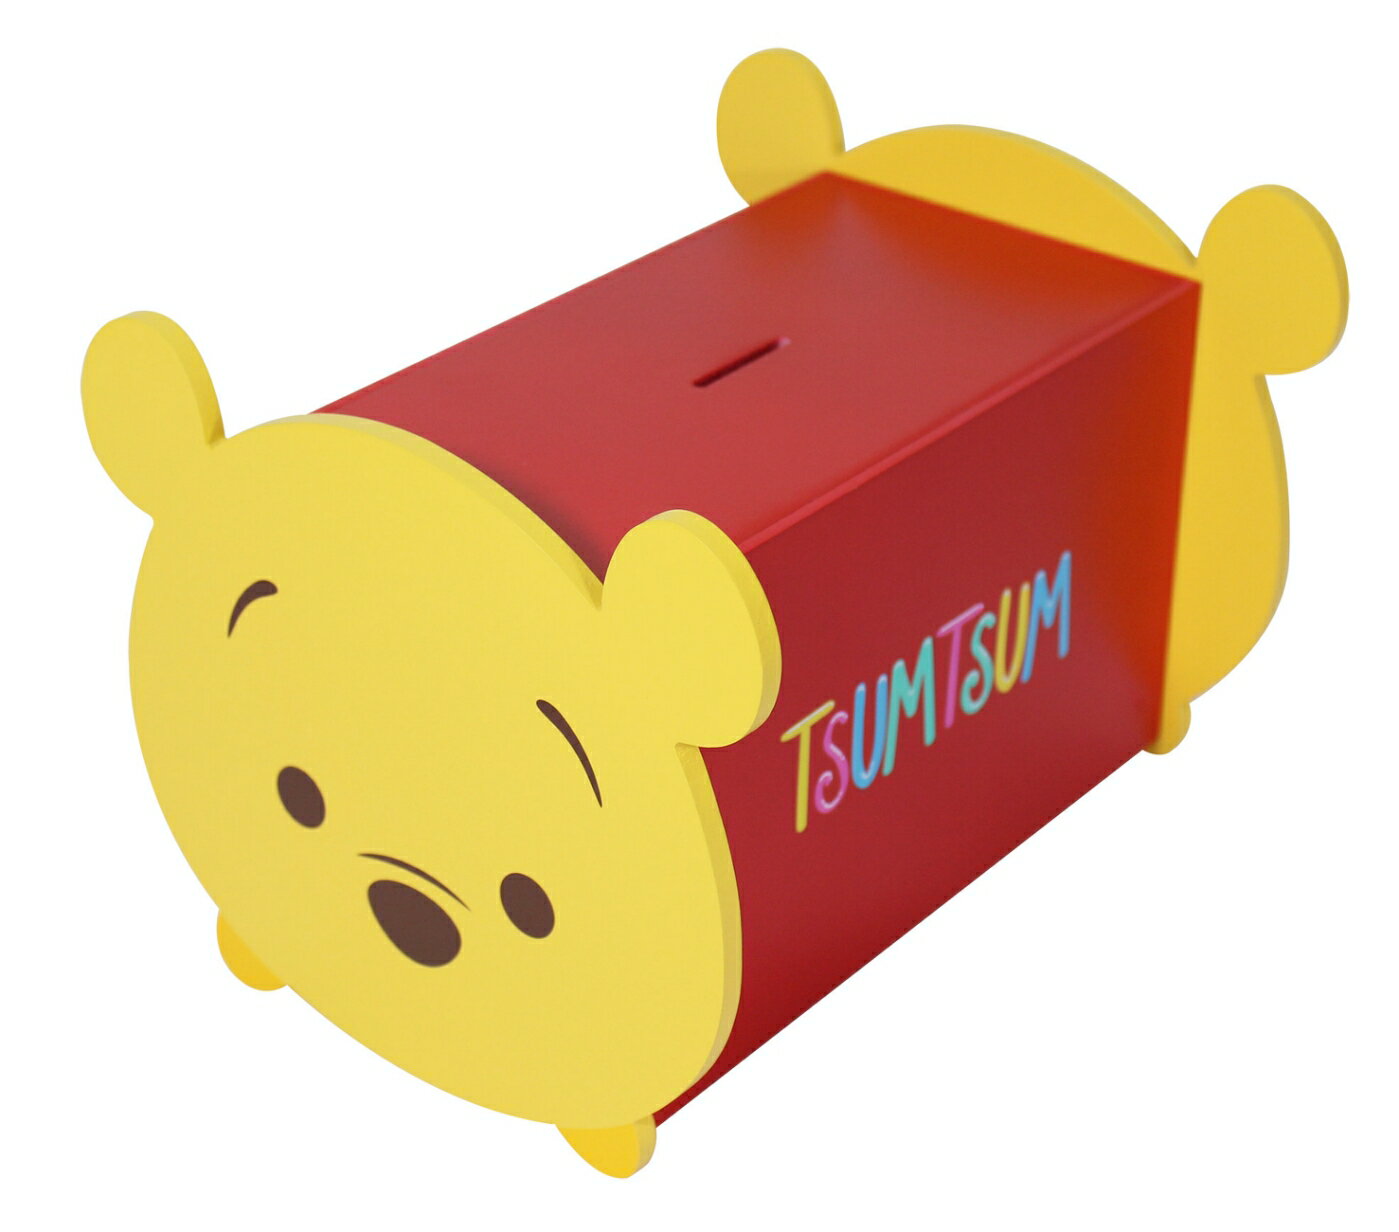 【震撼精品百貨】Winnie the Pooh 小熊維尼 台灣授權Tsum Tsum 維尼造型存錢筒*38387 震撼日式精品百貨